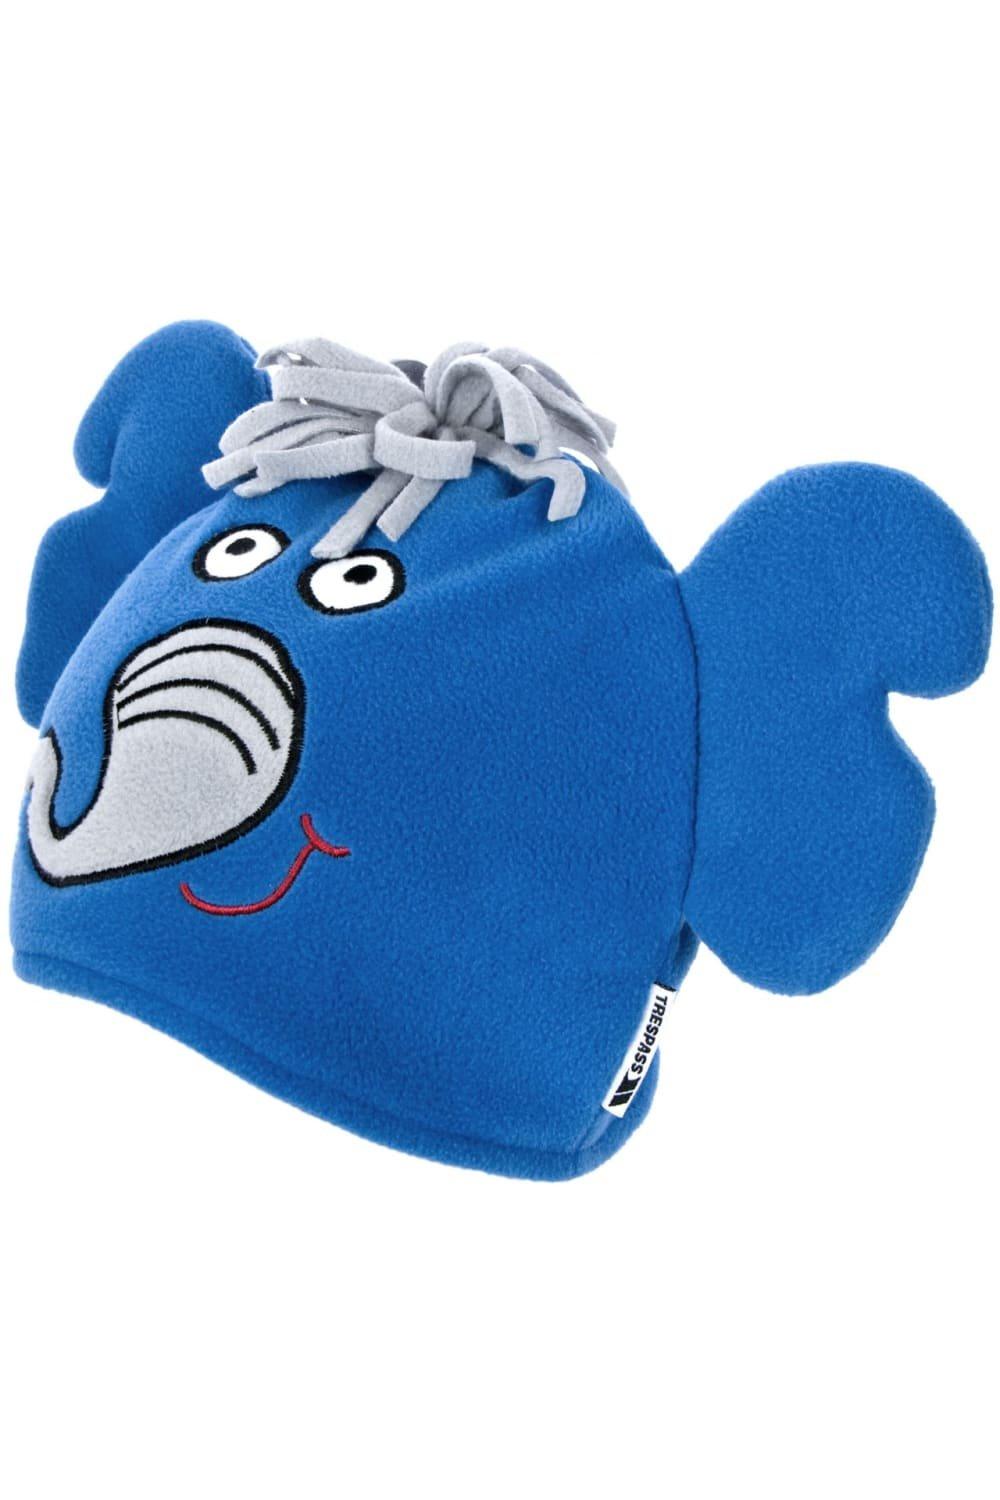 Шапка-бини с дизайном Dumpy Elephant Trespass, синий новинка балаклава для девочек шерстяная вязаная шапка шарф шапка манишка зимние шапки для женщин шапочки облегающие супертеплая флисовая